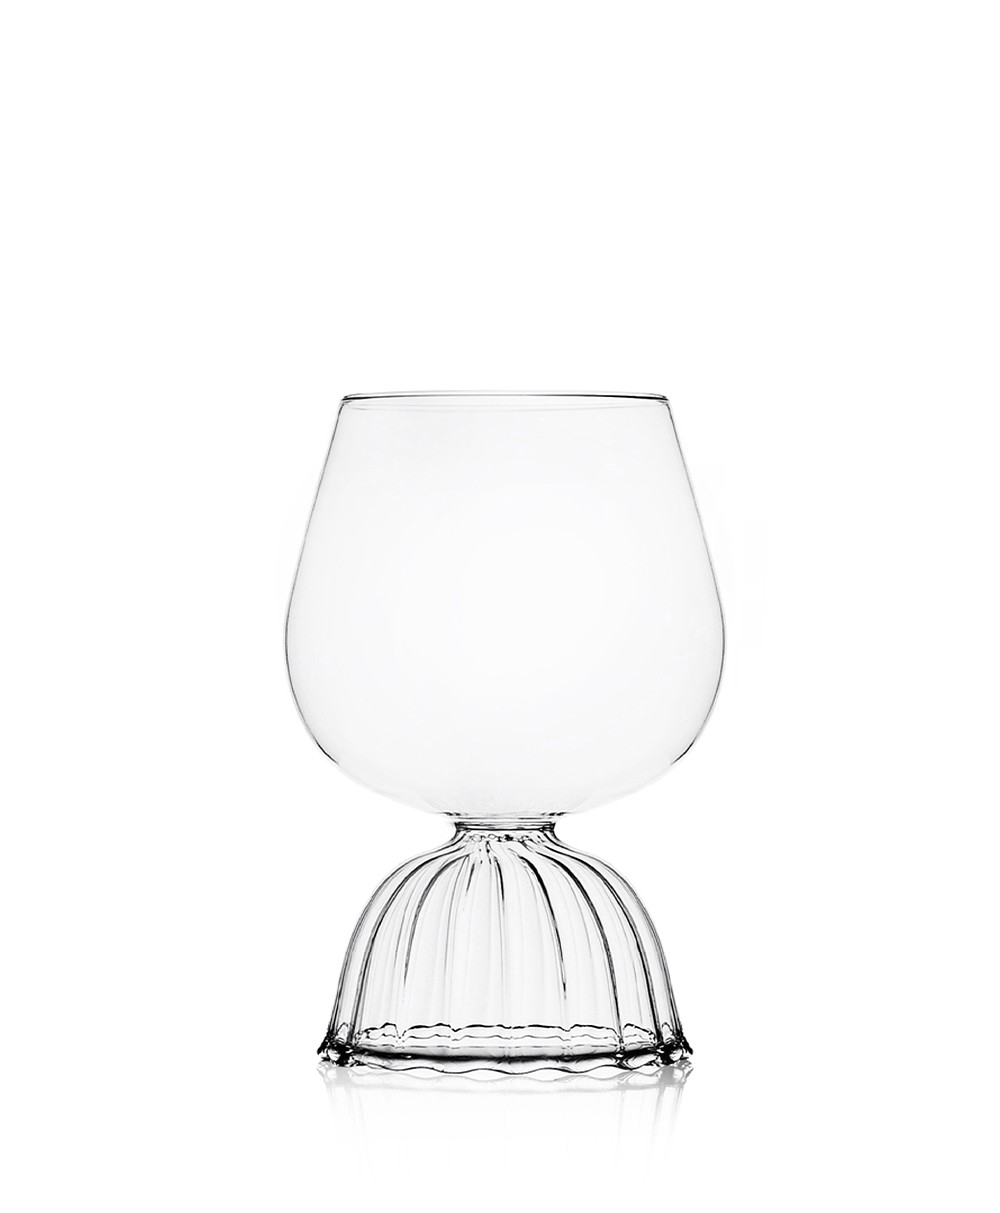 Produktbild "Tutu Rotweinglas" des Herstellers Ichendorf Milano im RAUM Conceptstore